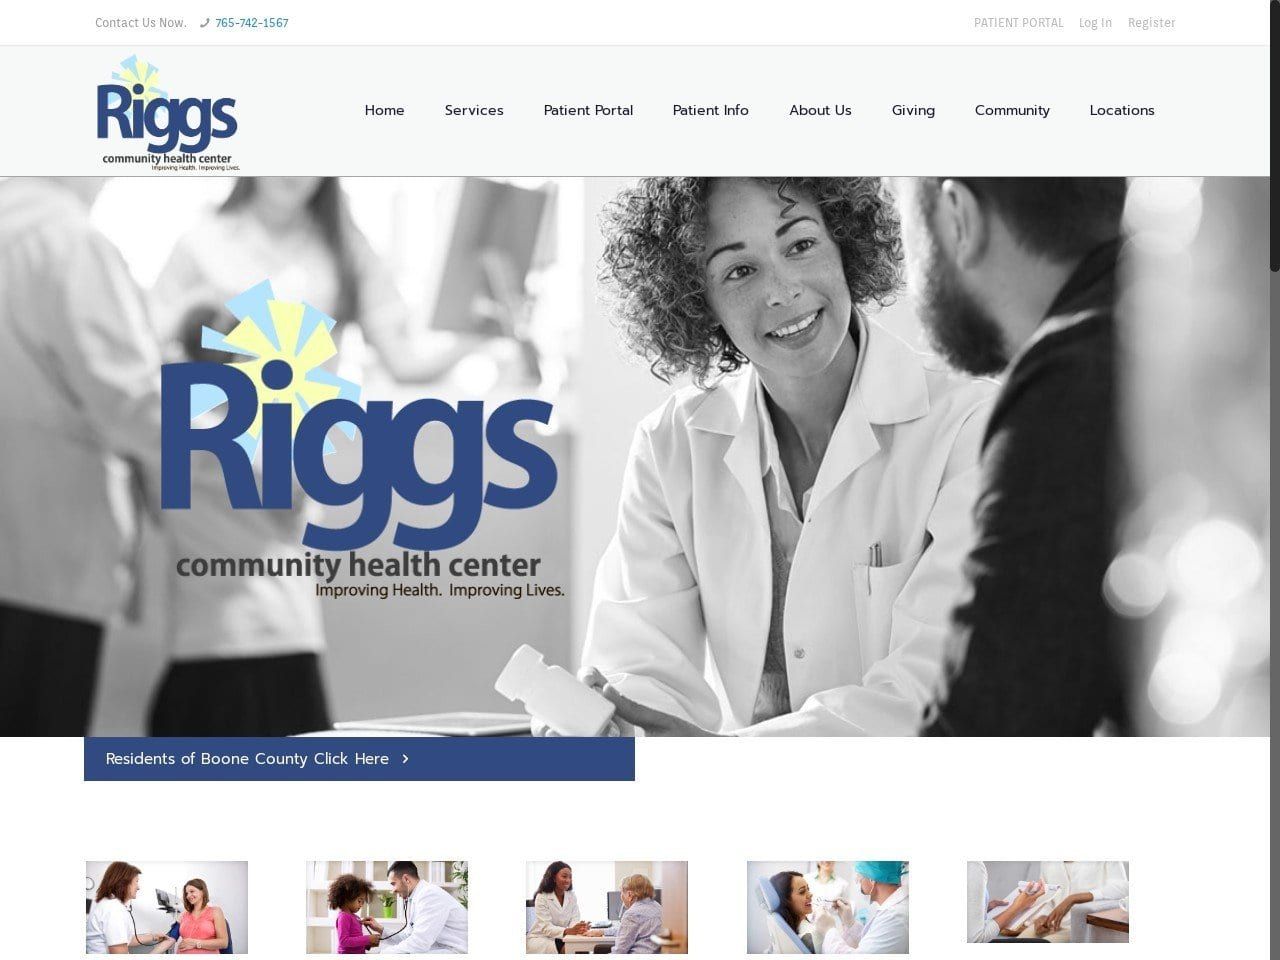 Riggs Community Health Center Website Screenshot from riggshealth.com